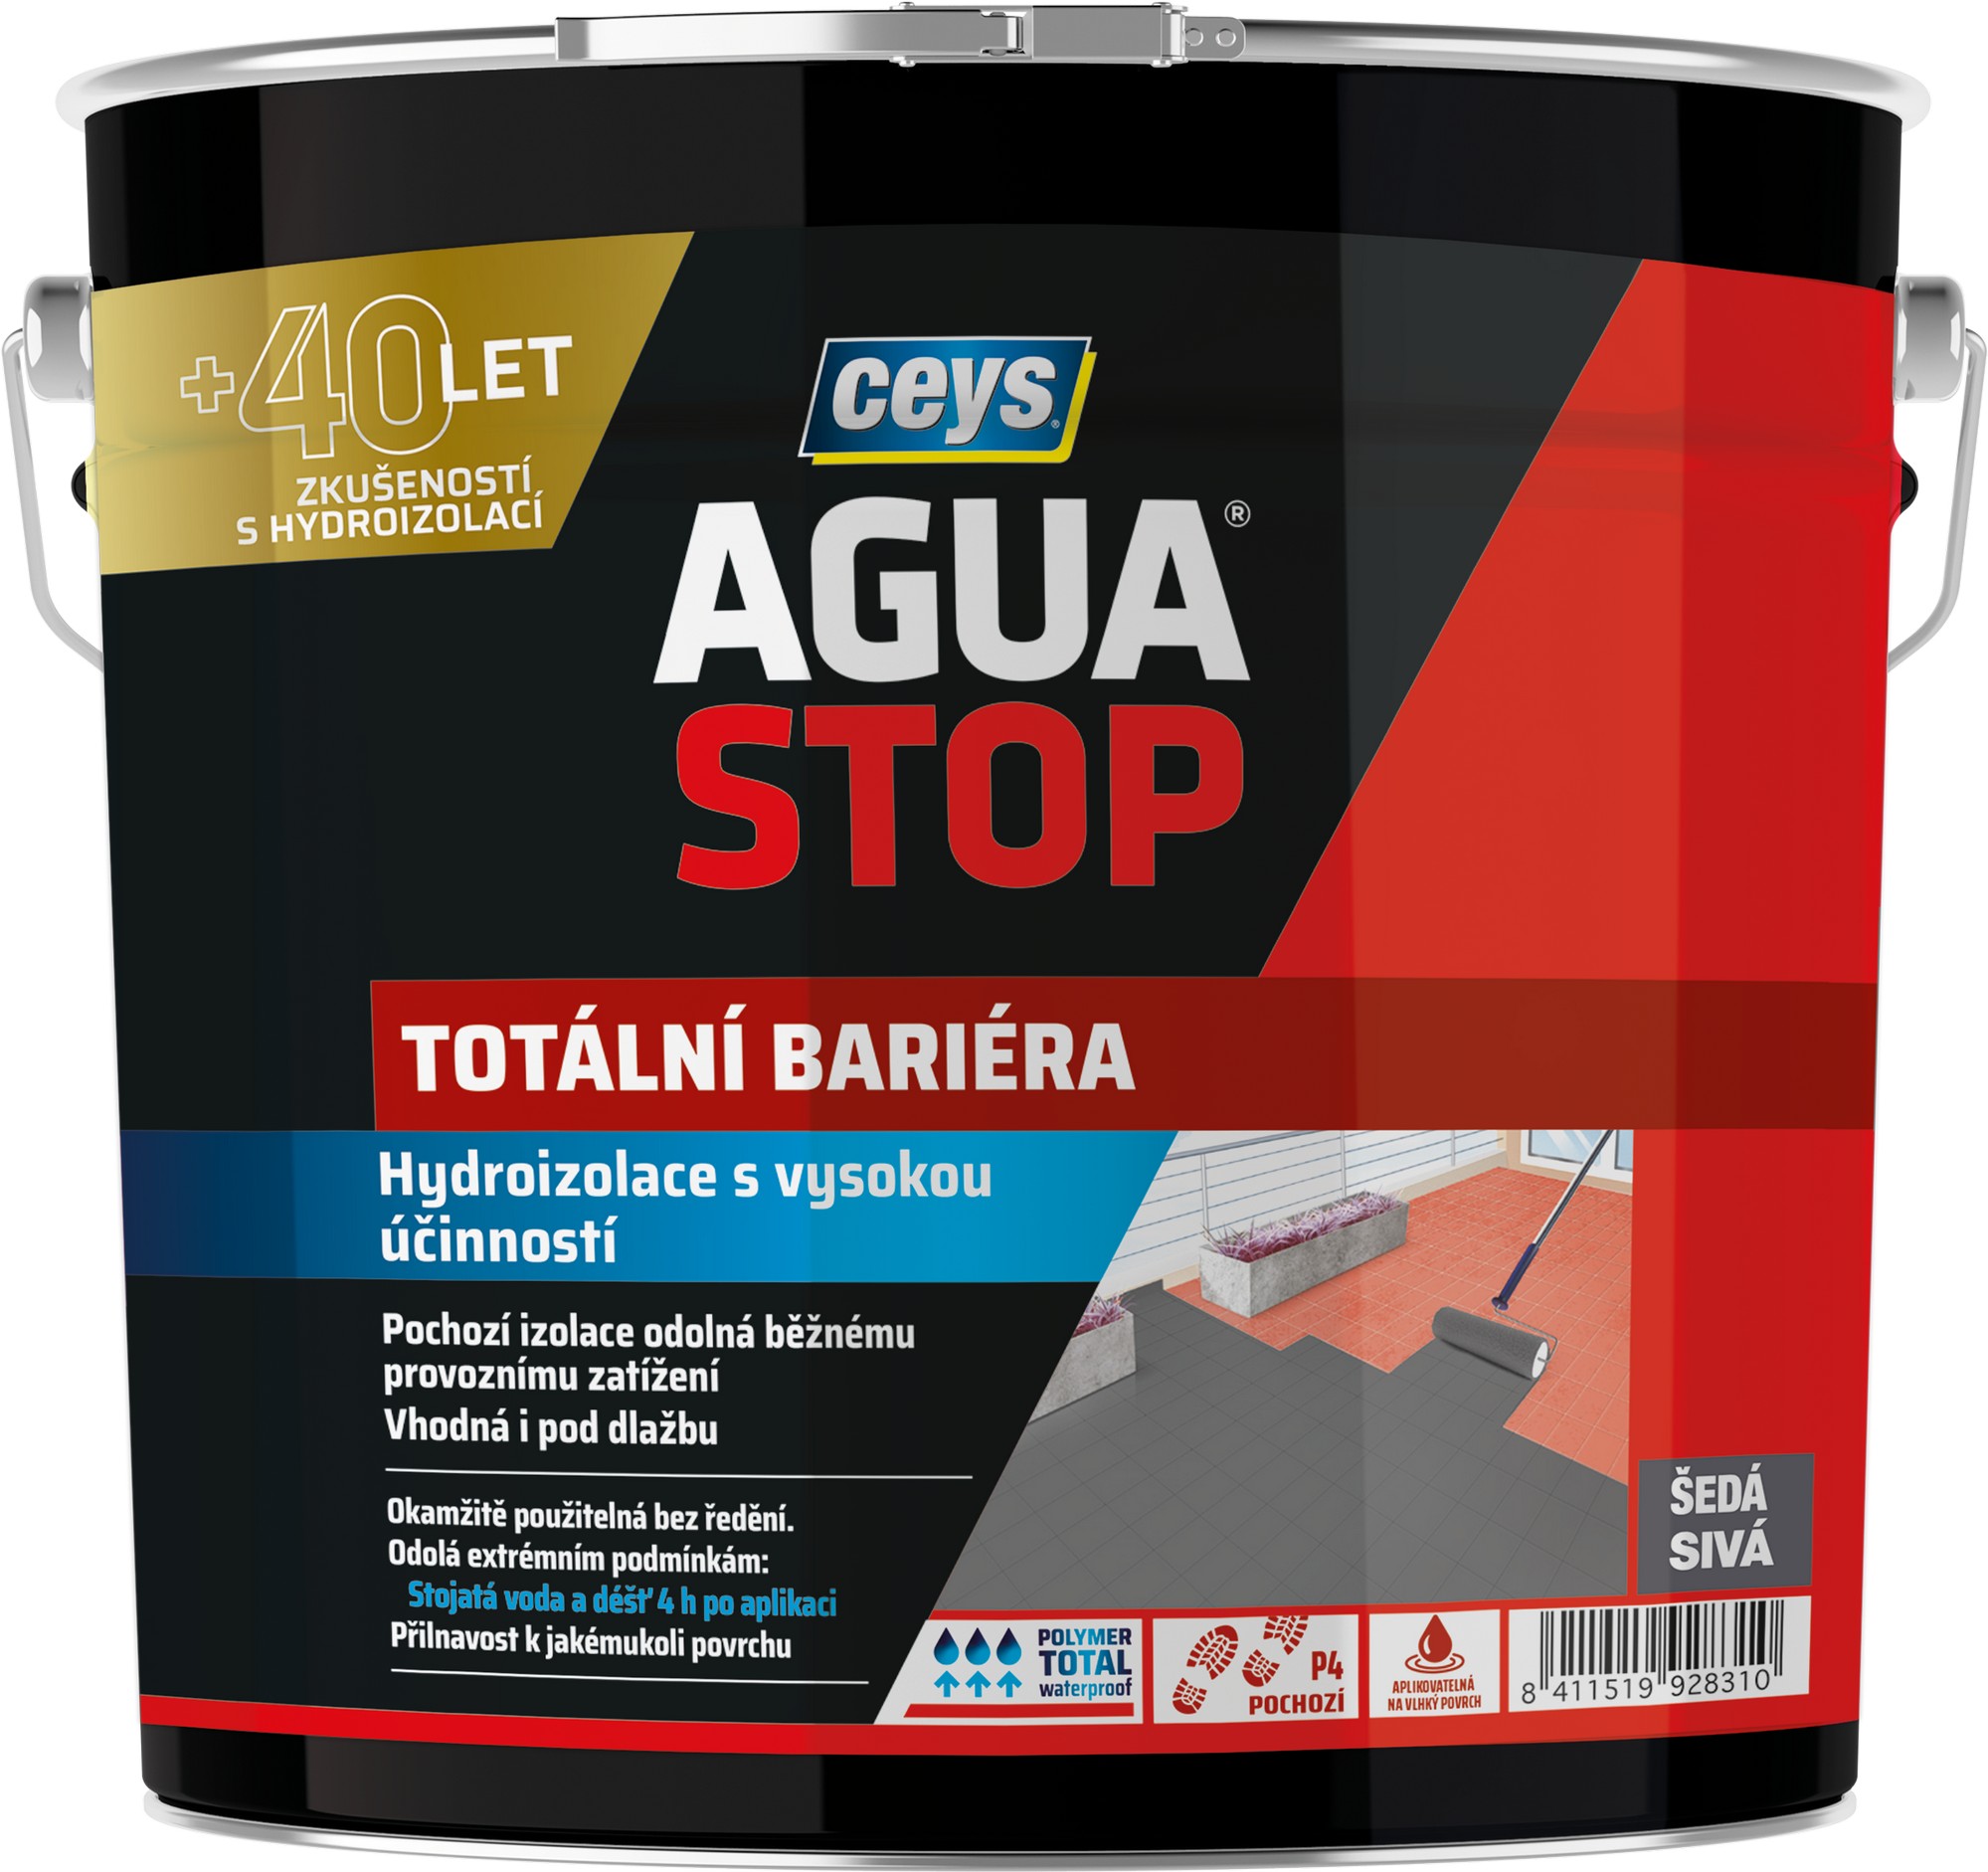 Hydroizolace Ceys AGUA STOP totální bariéra 4 kg